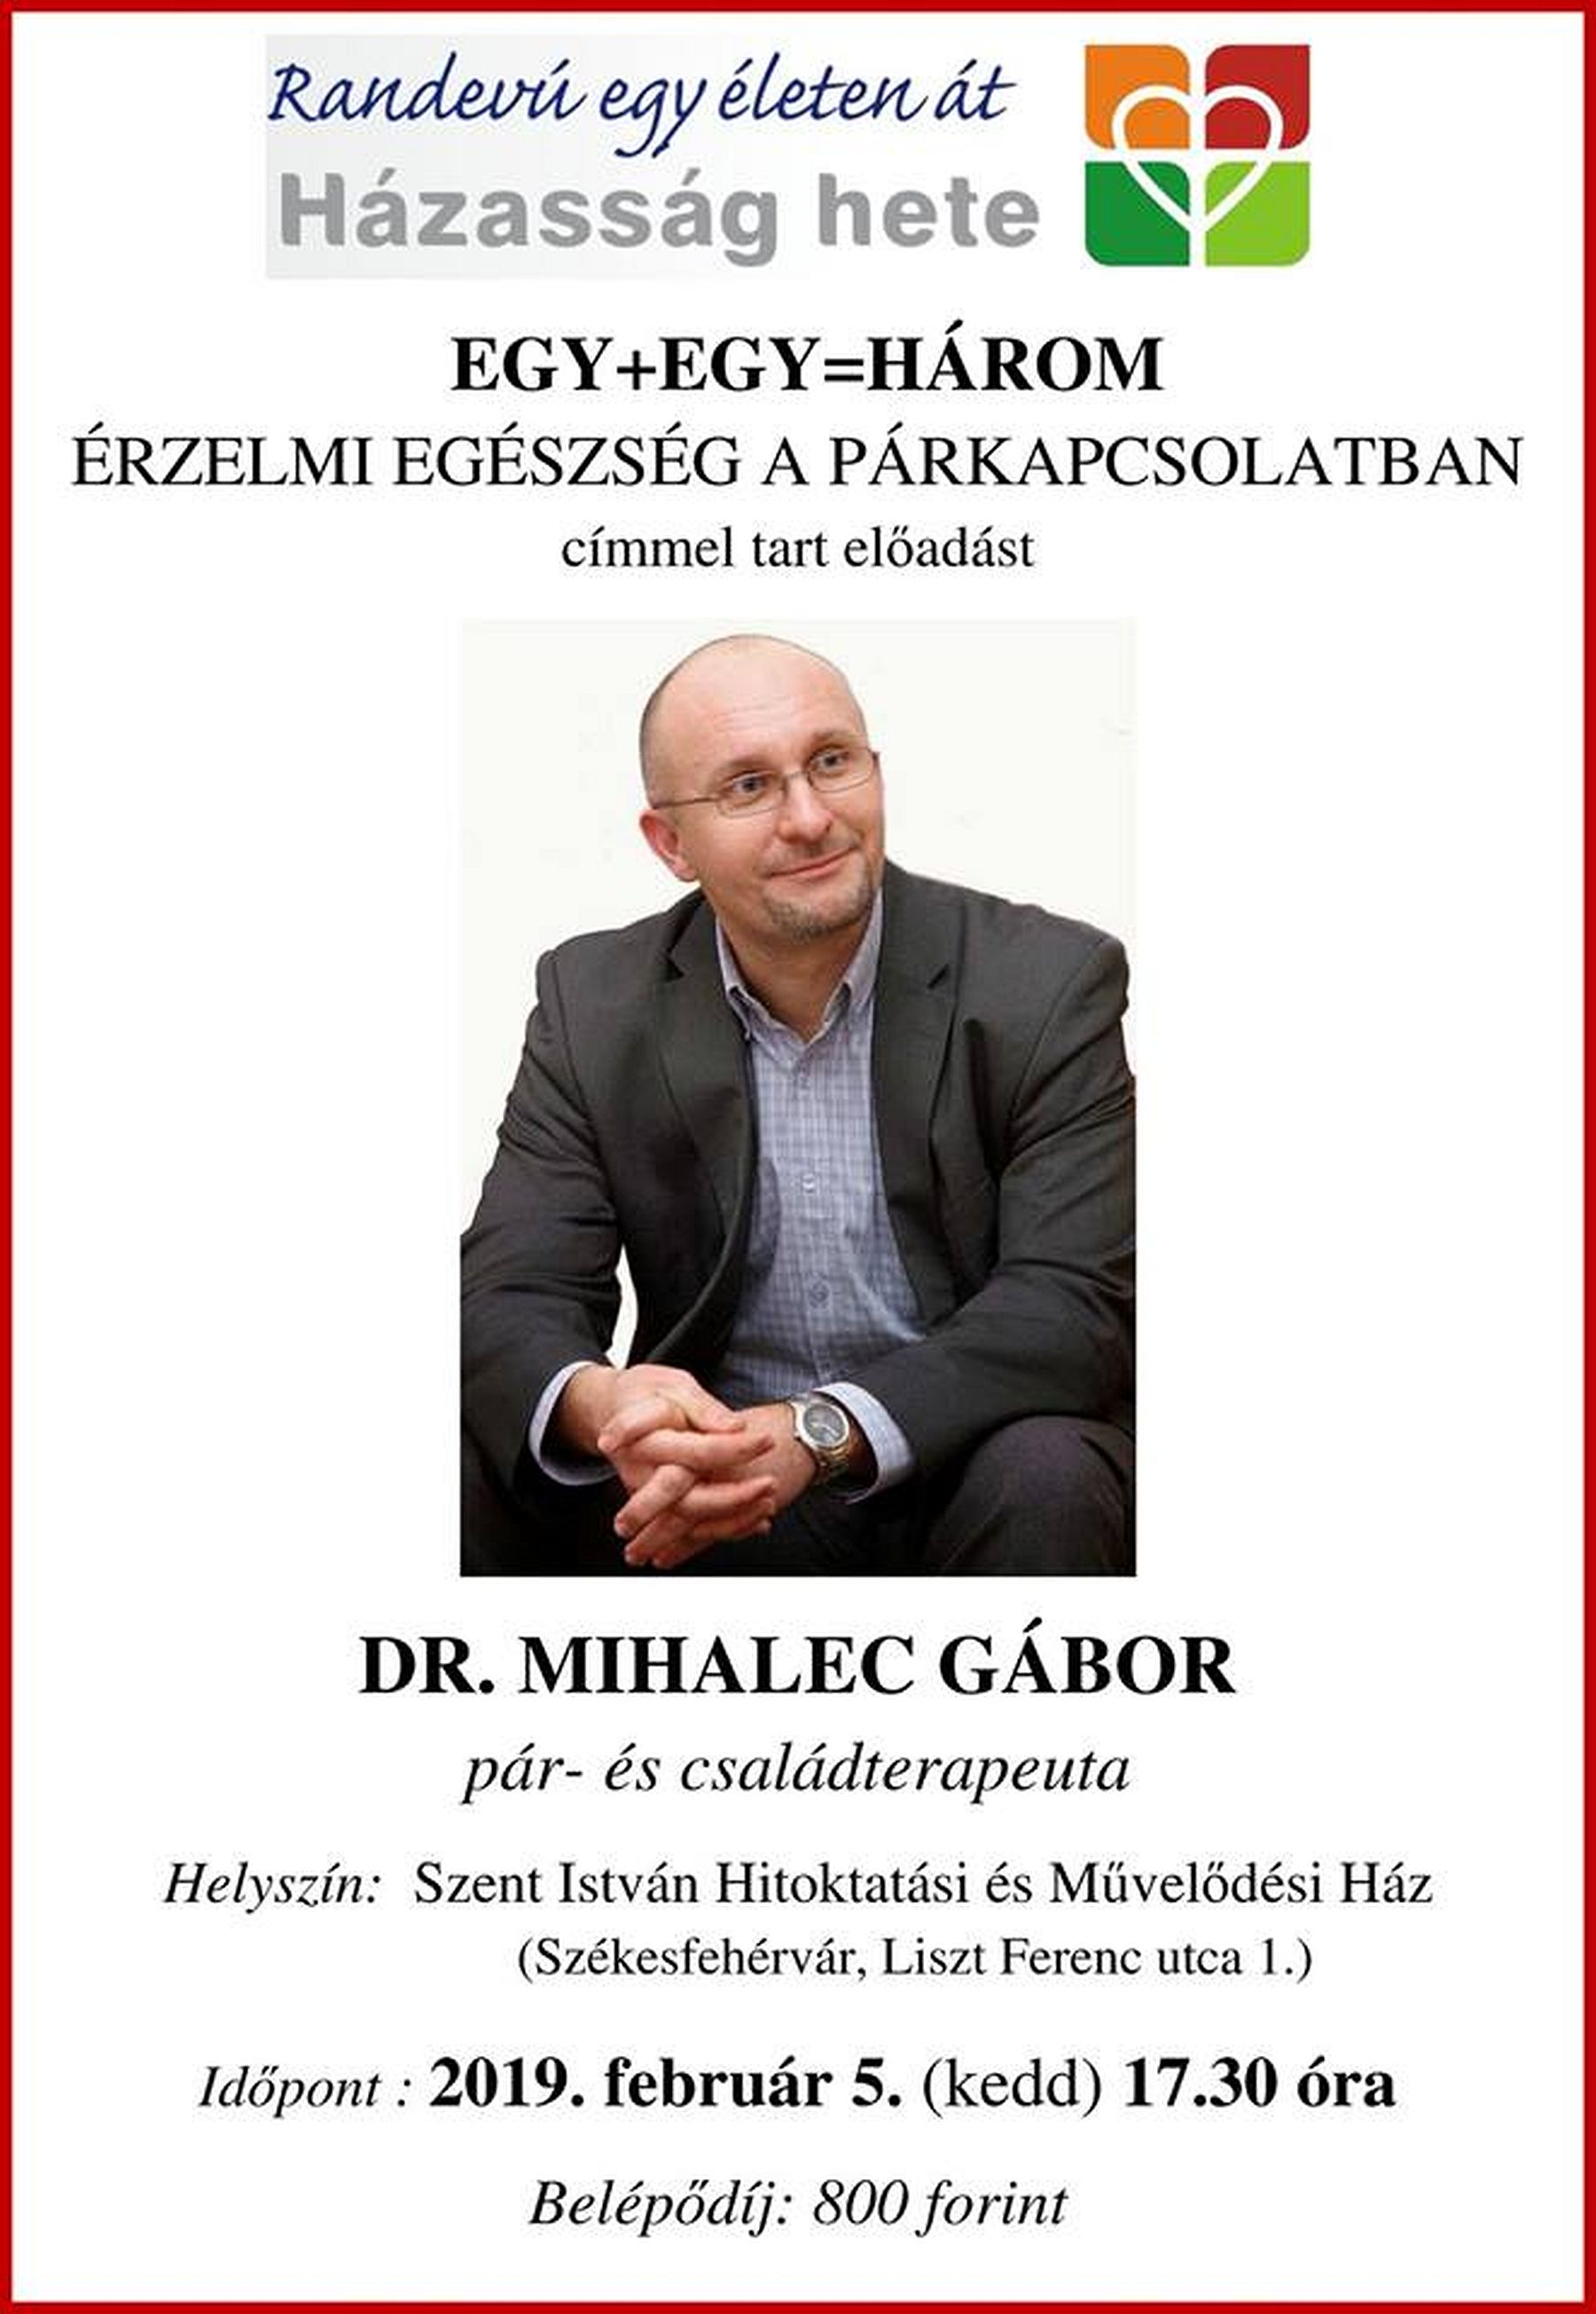 Érzelmi egészség a párkapcsolatban - Dr. Mihalec Gábor előadása a Házasság hetén